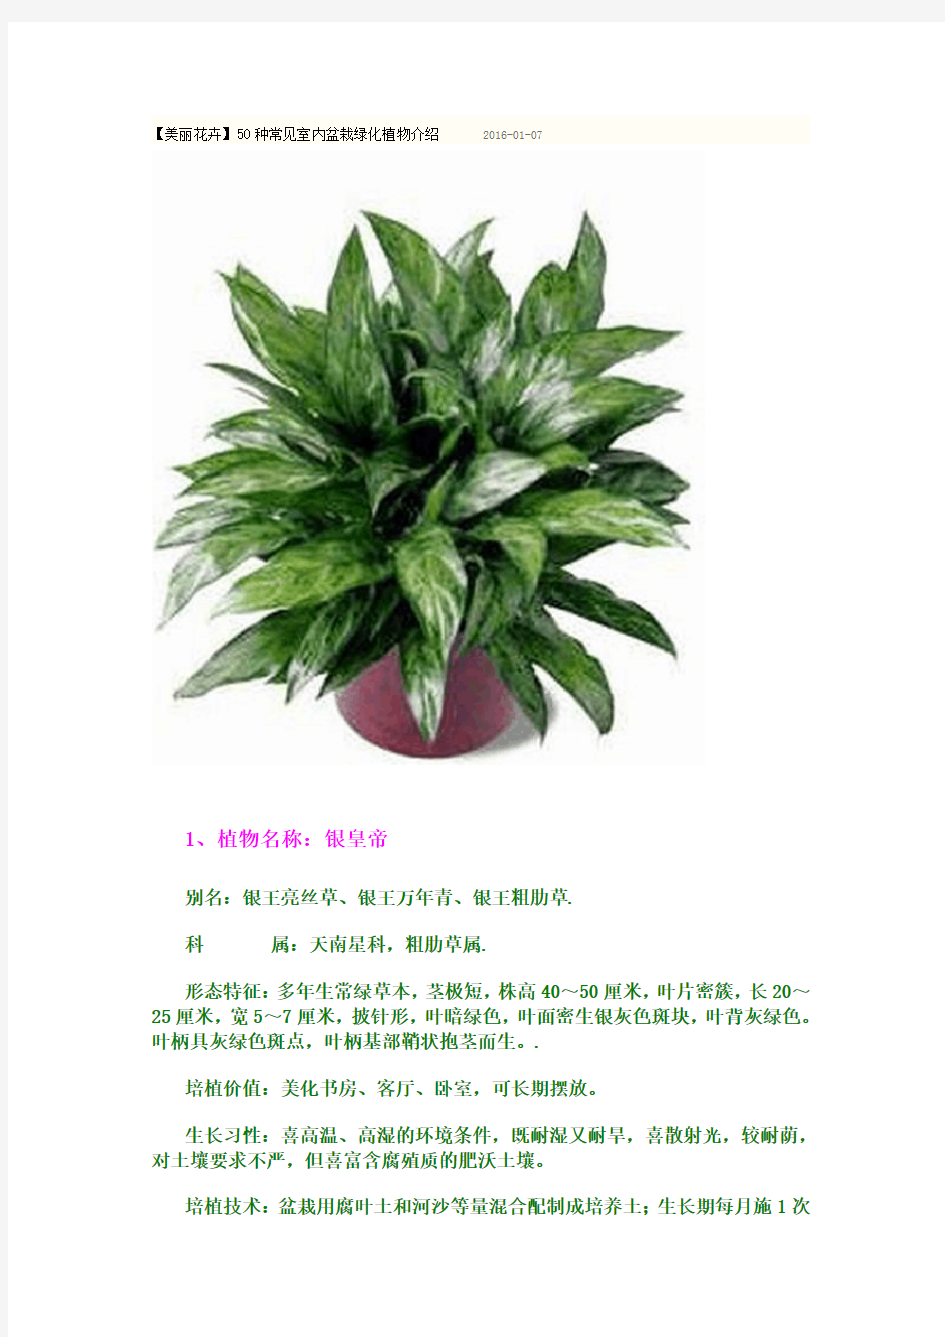 50种常见室内盆栽绿化植物